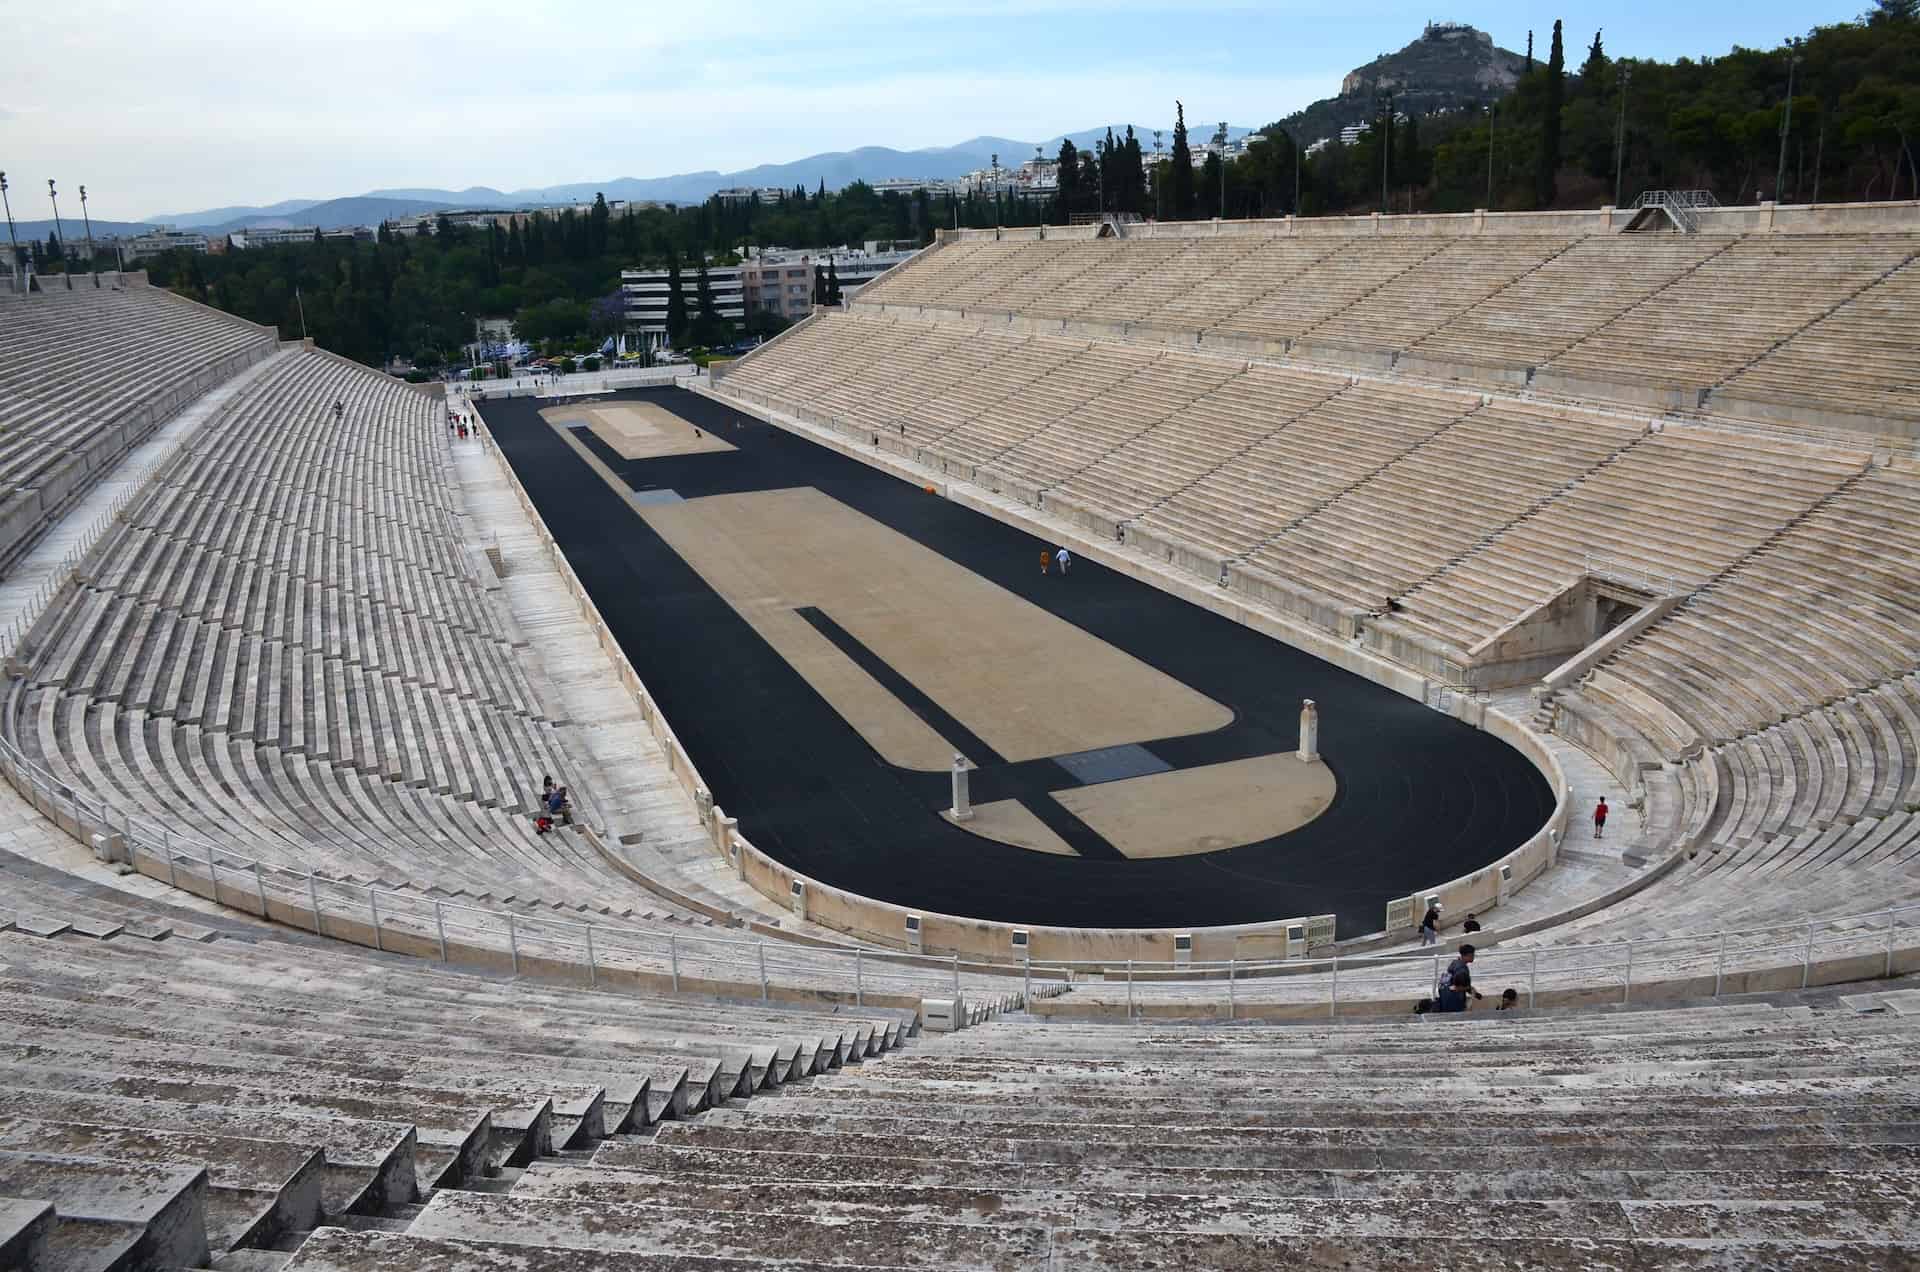 Panathenaic Stadium in Athens, Greece